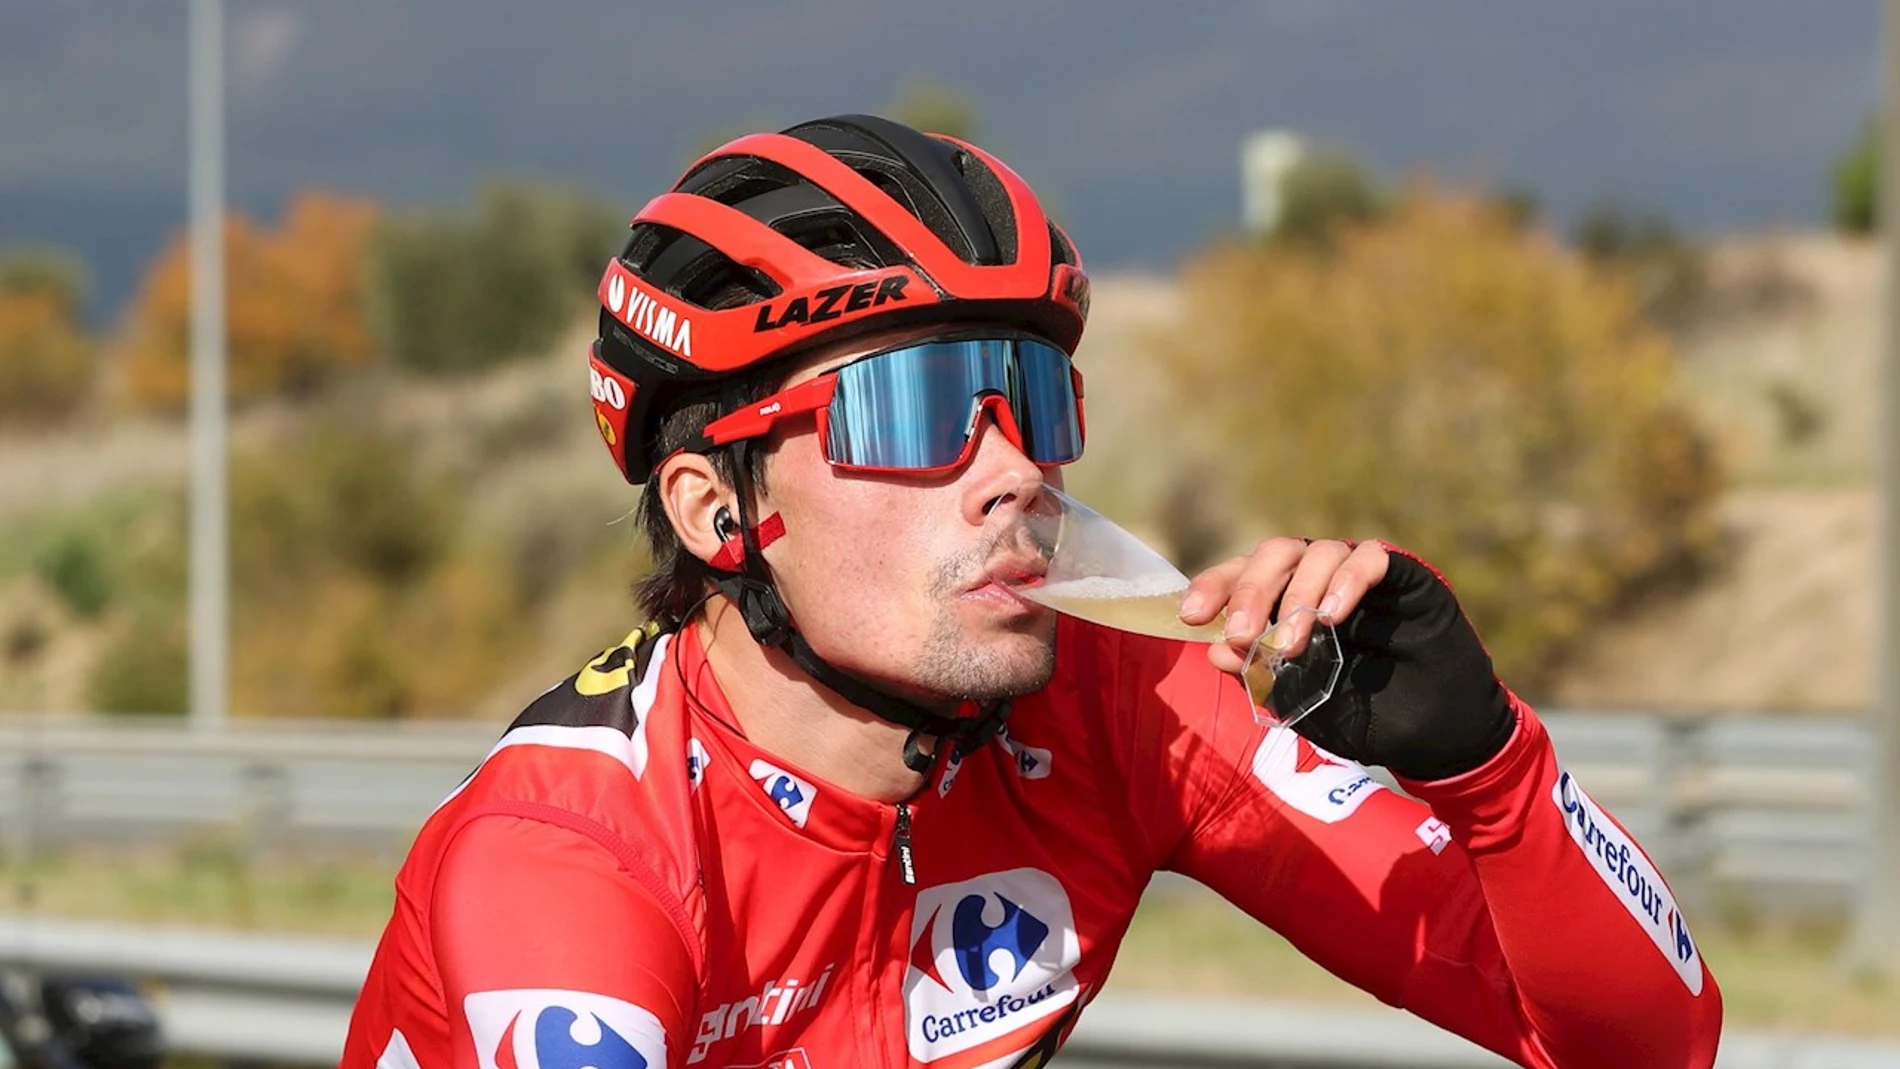 Pirmoz Roglic saborea la victoria en la Vuelta a España